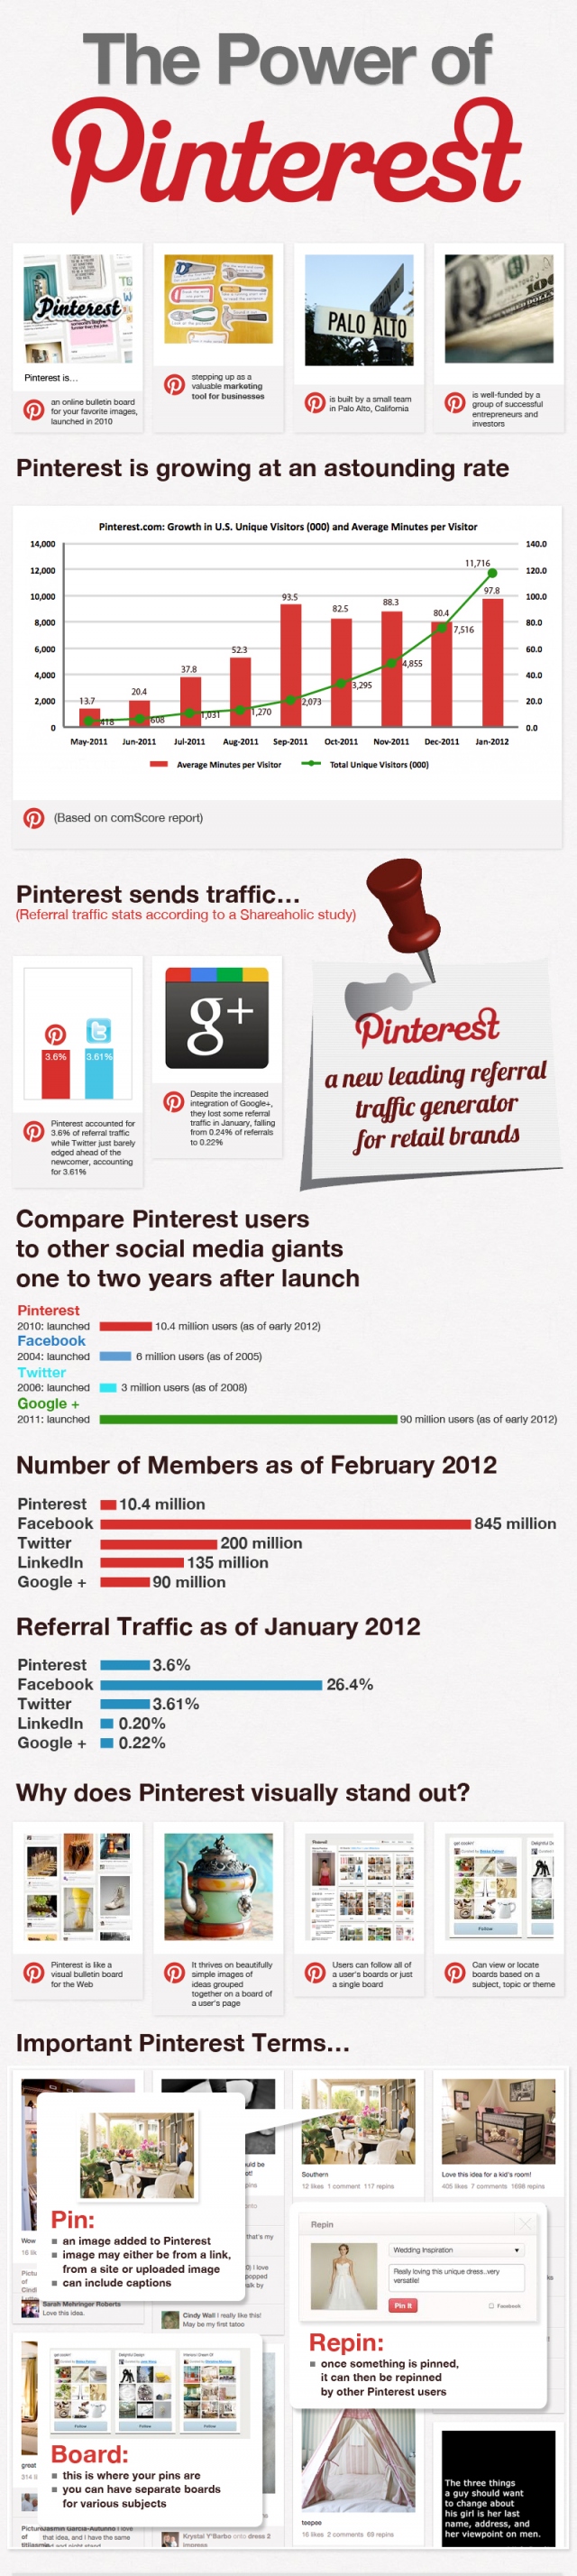 Усе, що потрібно знати про Pinterest (інфографіка)